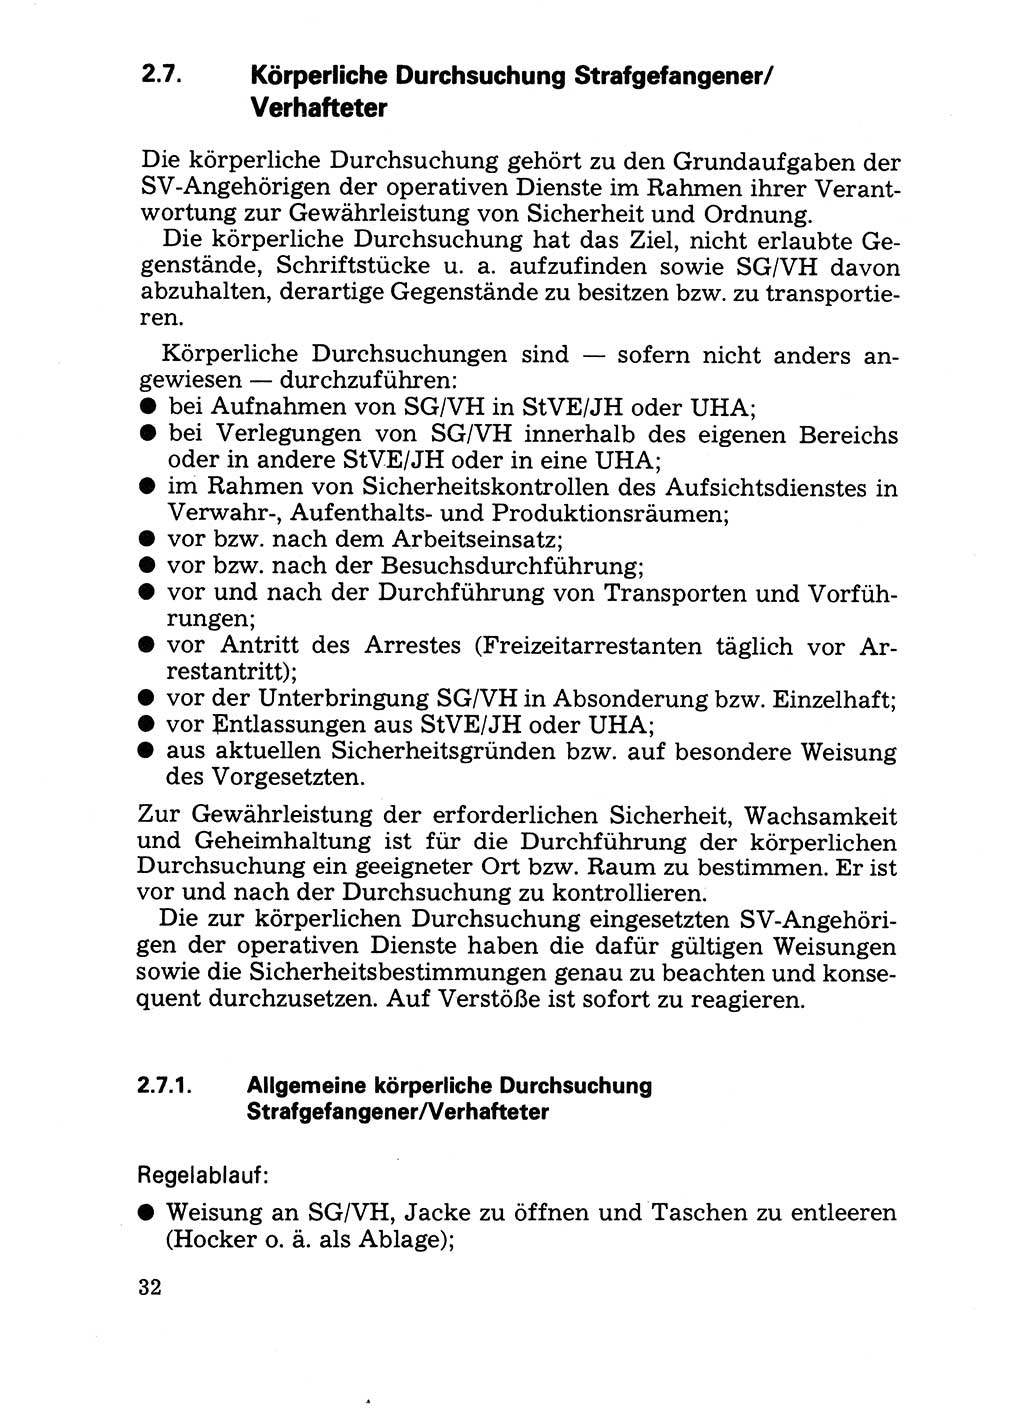 Handbuch für operative Dienste, Abteilung Strafvollzug (SV) [Ministerium des Innern (MdI) Deutsche Demokratische Republik (DDR)] 1981, Seite 32 (Hb. op. D. Abt. SV MdI DDR 1981, S. 32)